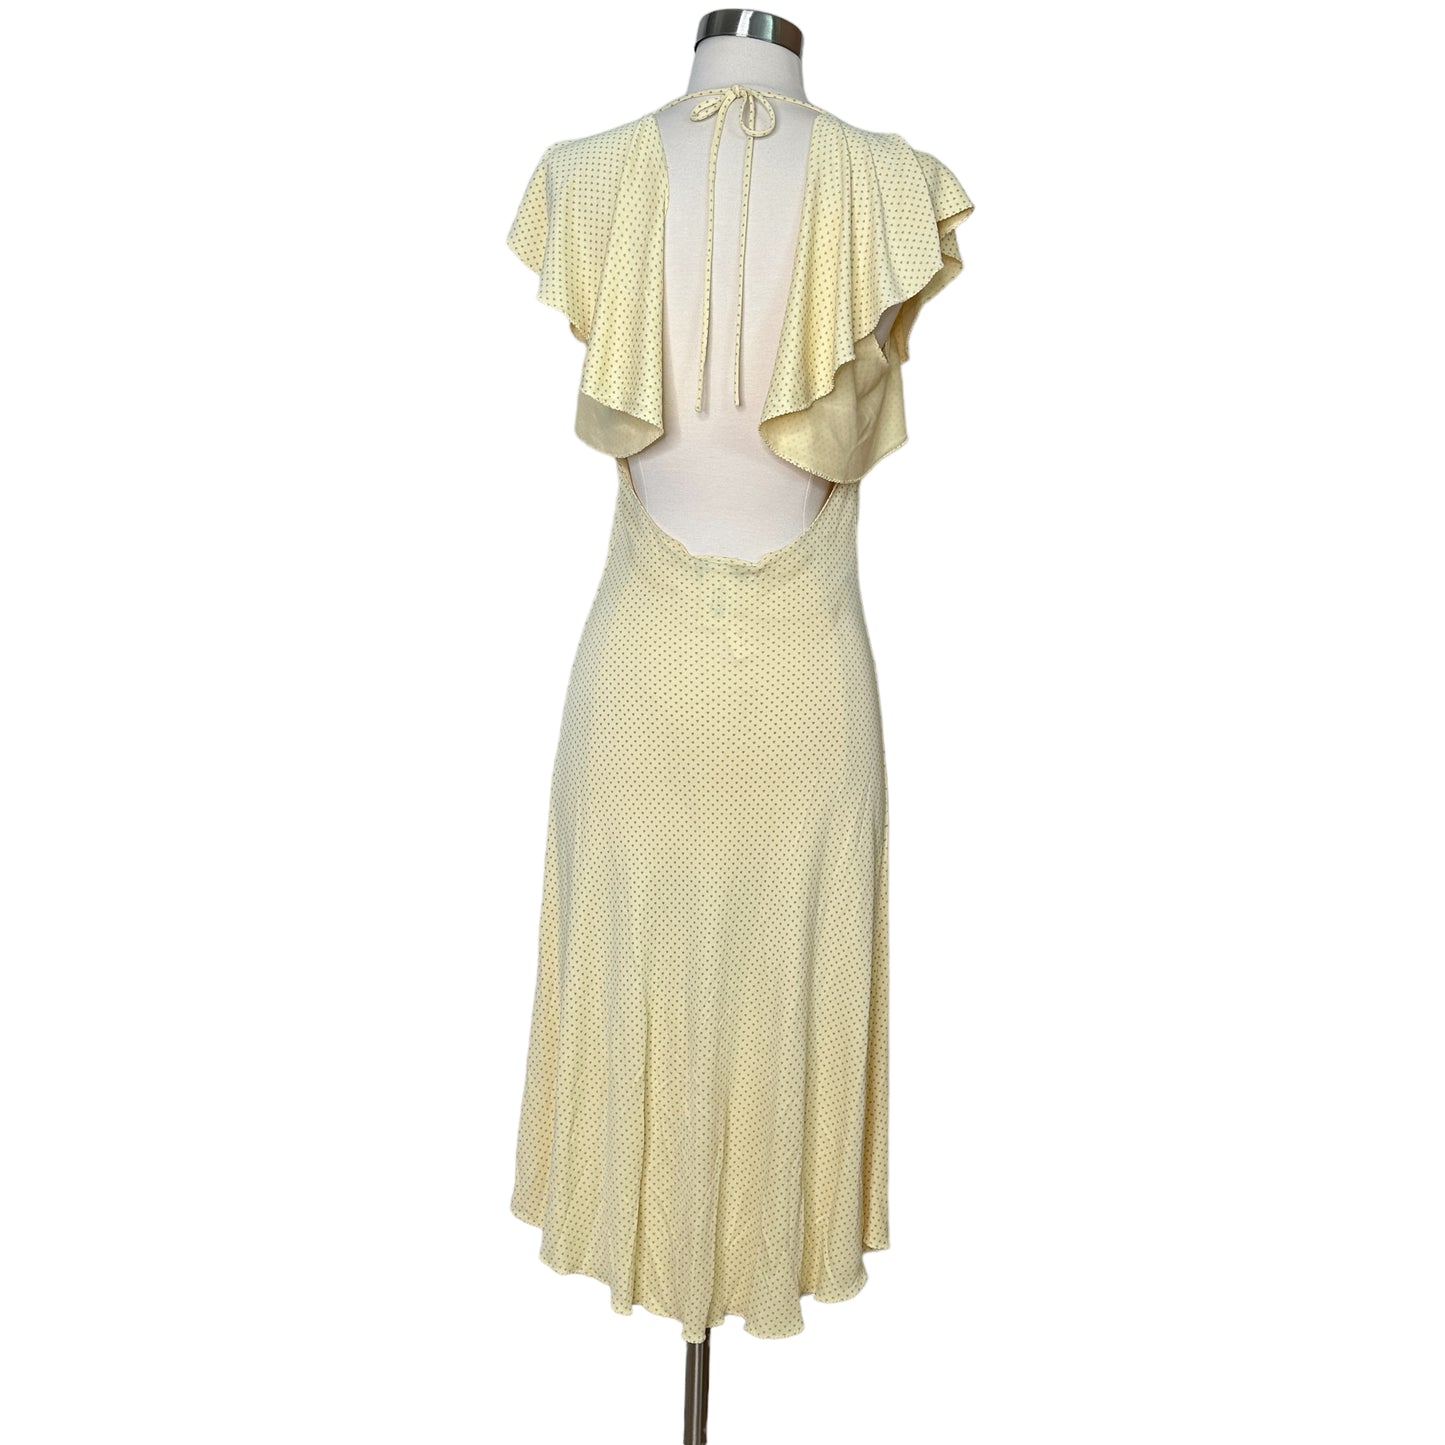 Pale Yellow Vintage Dress - M